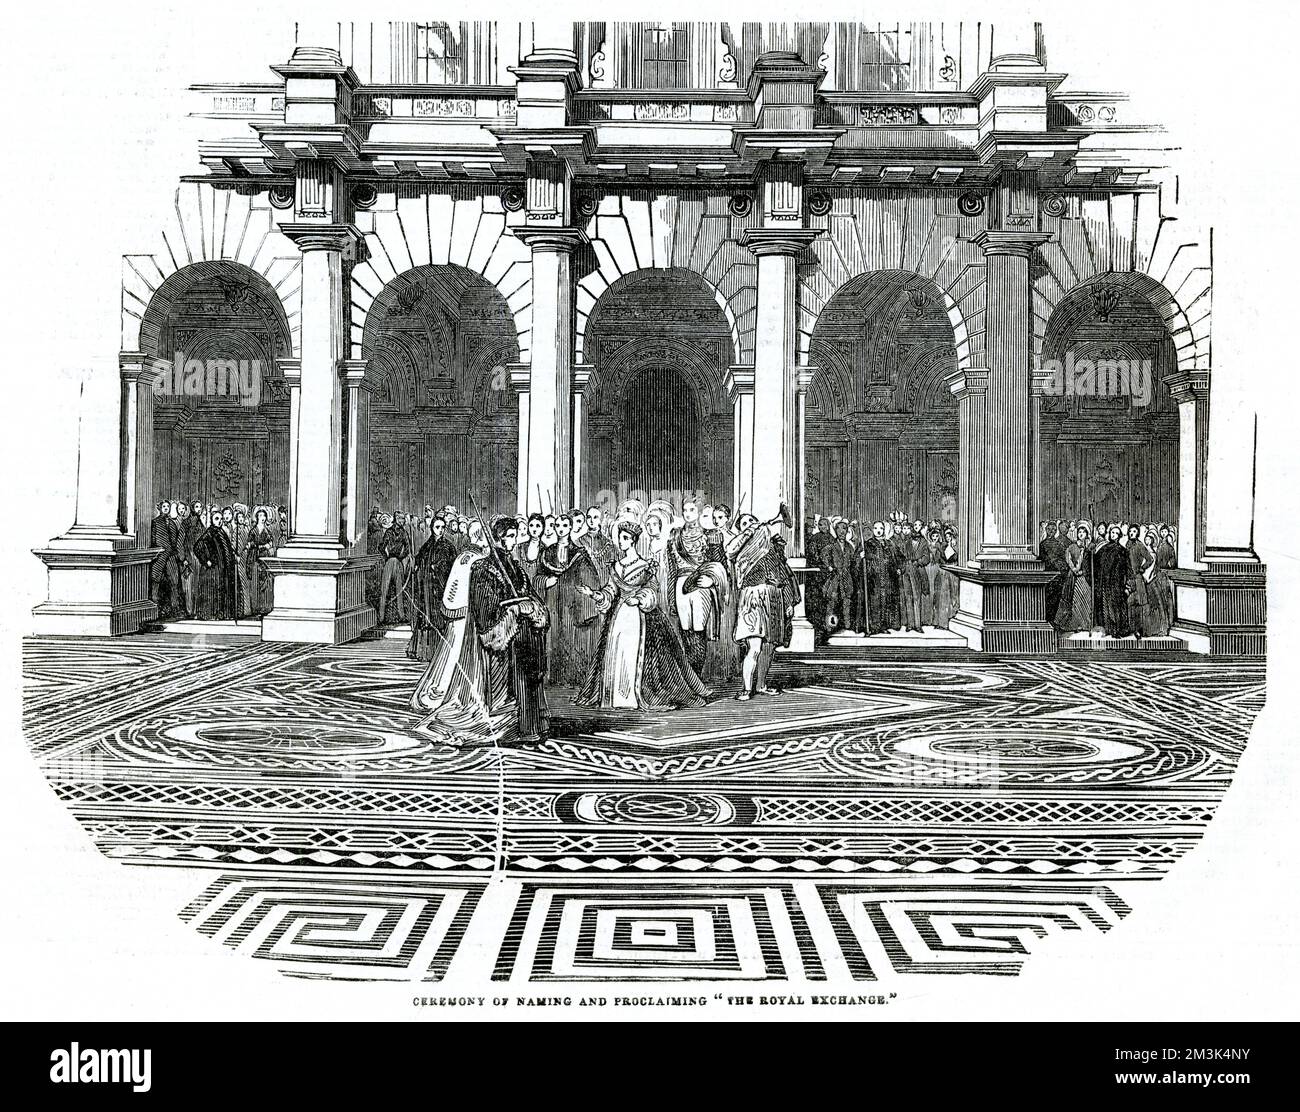 La regina Vittoria intraprendendo la cerimonia di denominazione e di proclamazione del 'Royal Exchange' alla sua apertura ufficiale in 1844. Data: 1844 Foto Stock